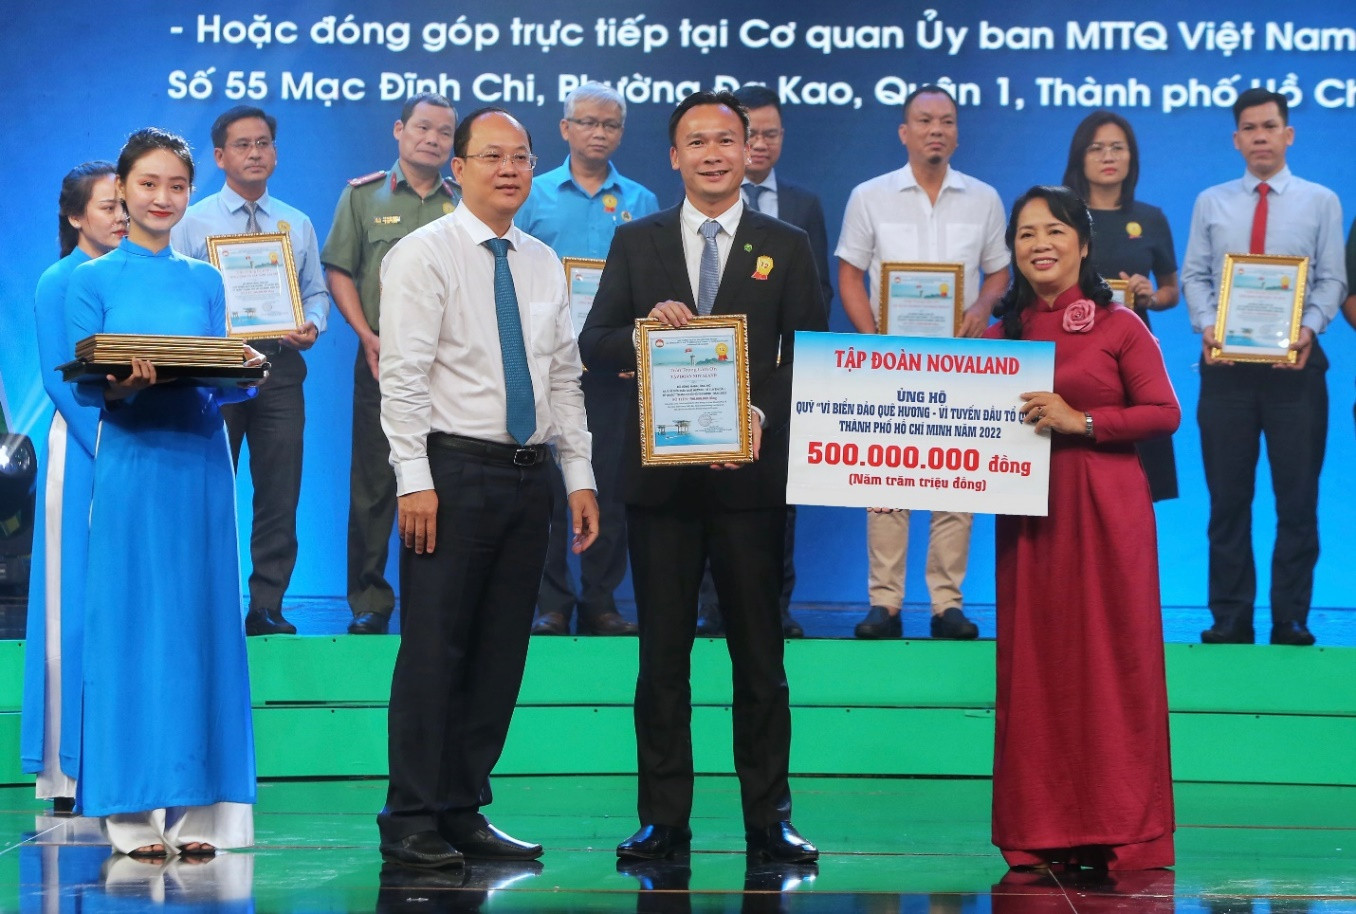 NovaGroup đồng hành nhiều năm liền cùng Ủy ban MTTQ Việt Nam Trung ương và địa phương trong các chương trình vận động ủng hộ quỹ “Vì người nghèo”, Qũy “Vì biển đảo quê hương”